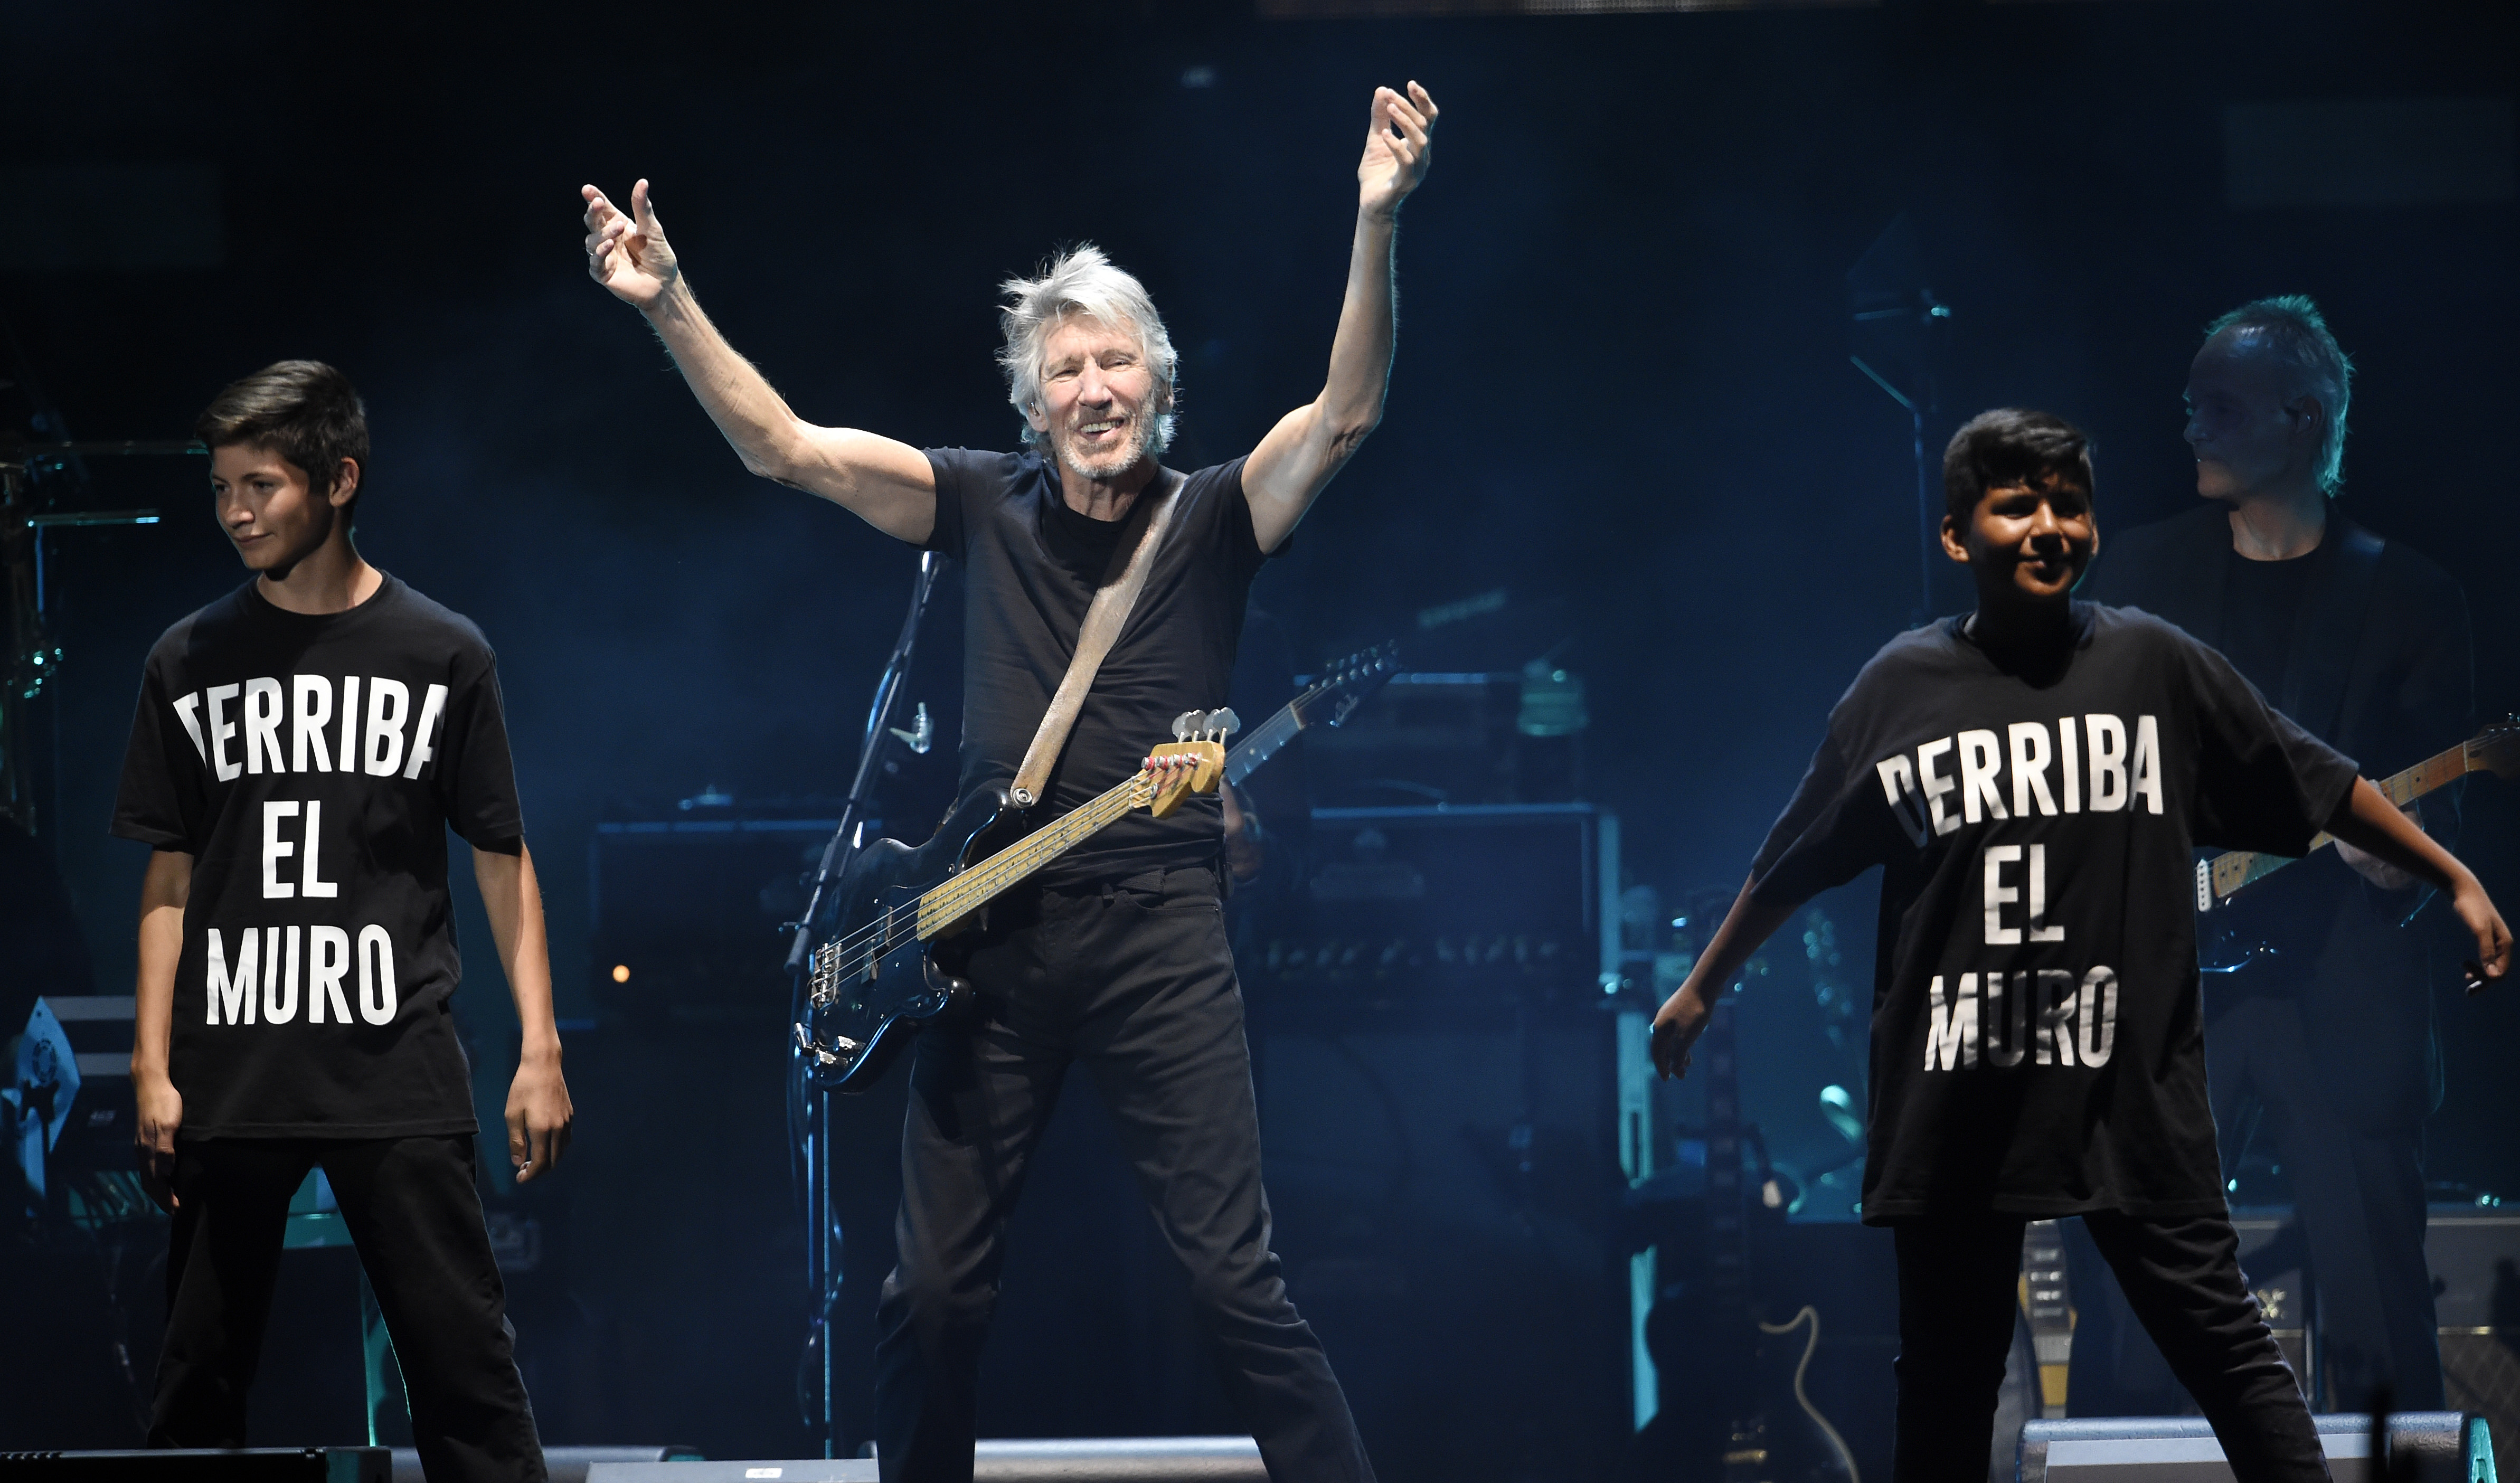 Roger Waters presento su primer disco en 25 años, el hipnótico 'Is This The Life We Really Want'